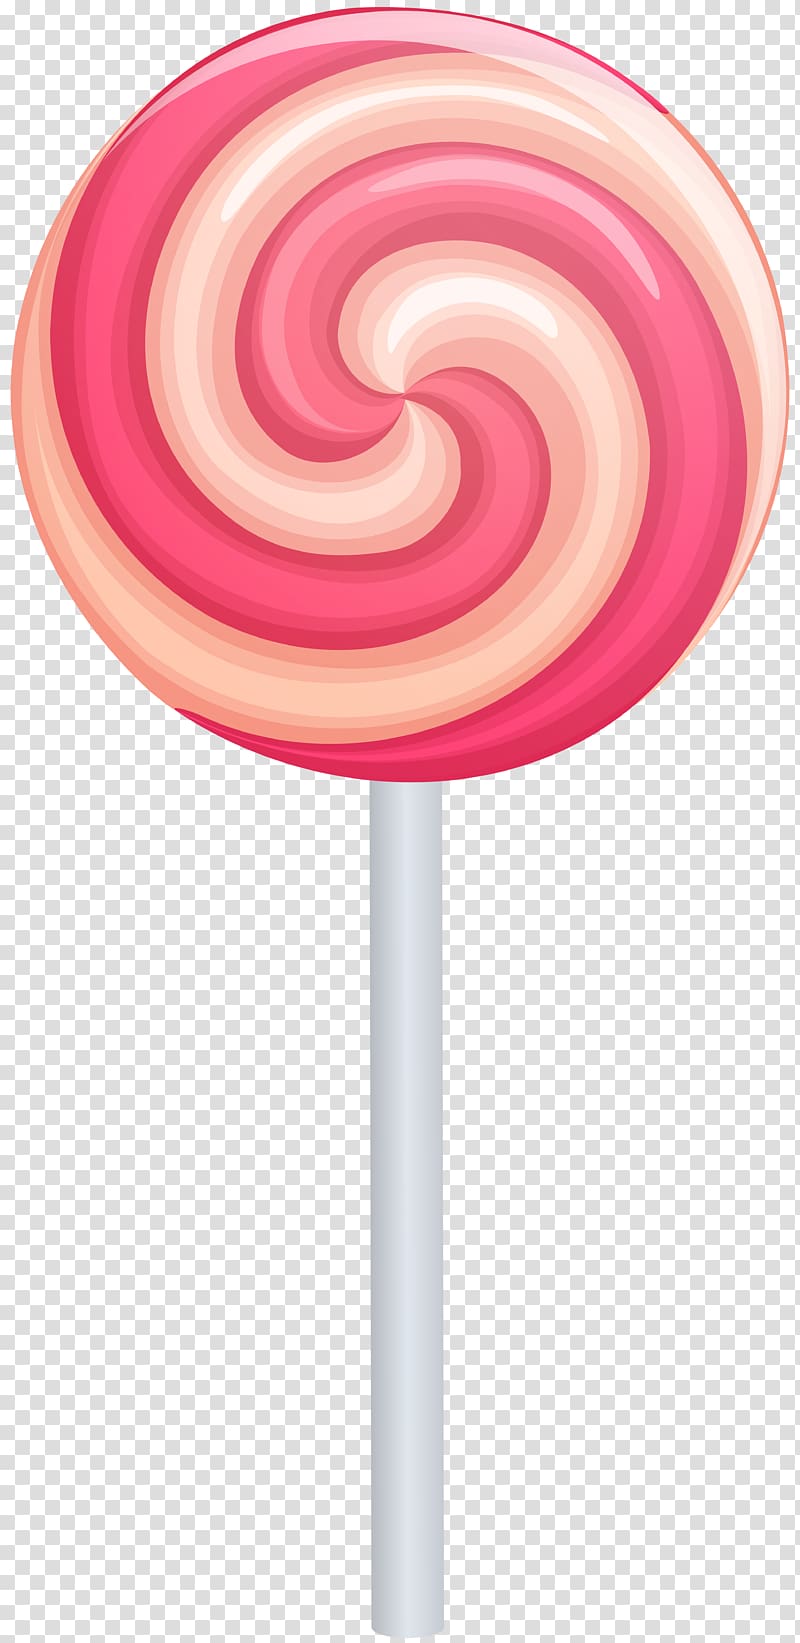 Lollipop Candy , lollipop transparent background PNG clipart